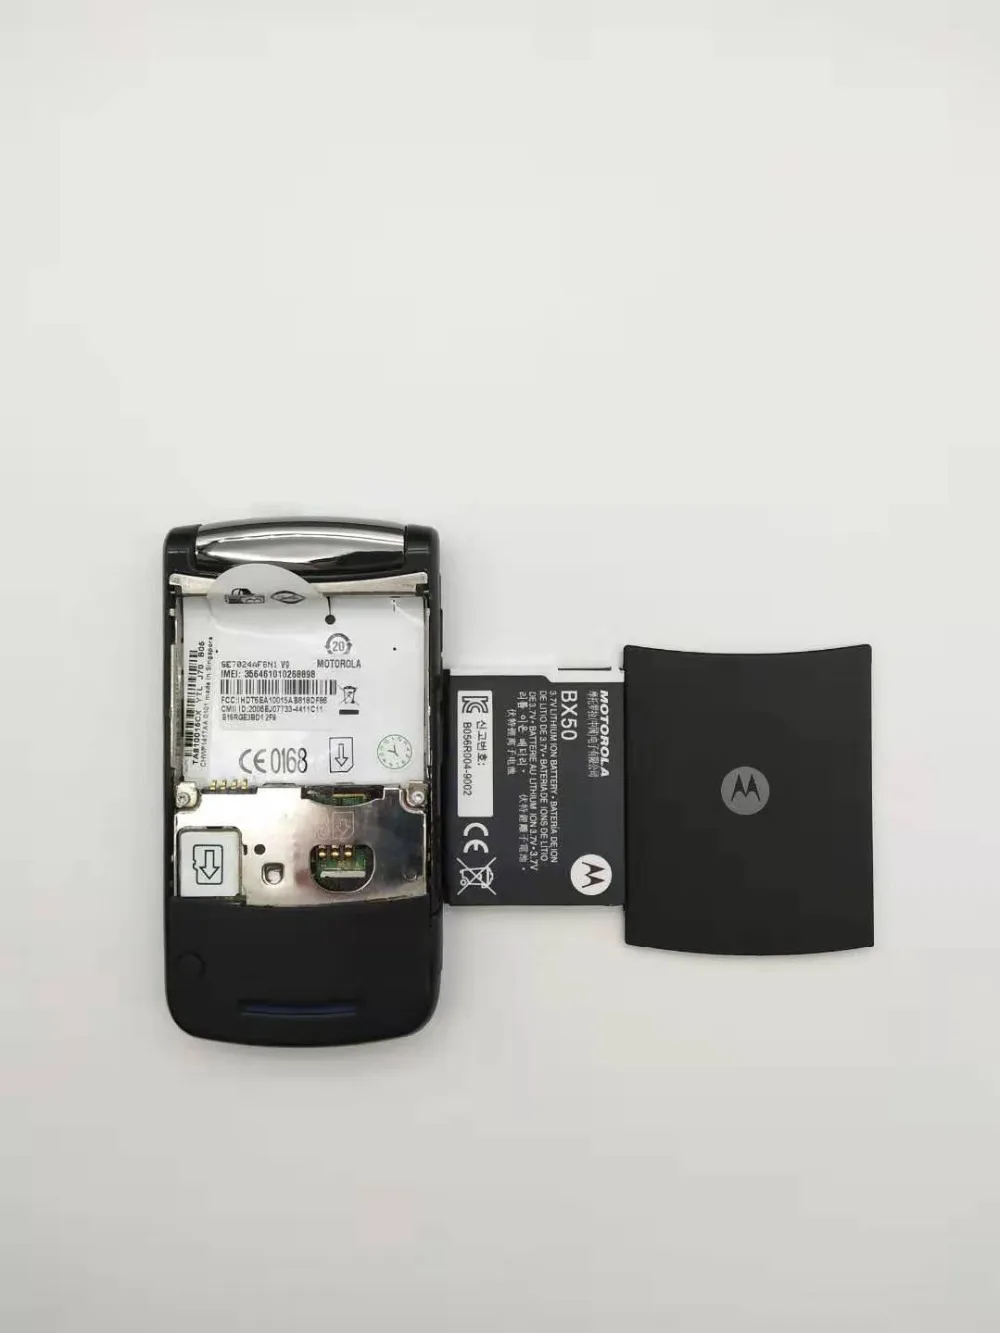 В запечатанной коробке ~ 100% оригинал Motorola RAZR2 V9 мобильный телефон 2,2 "3g 2 Гб 2.0MP GSM WCDMA флип Сотовая связь телефон Бесплатная доставка